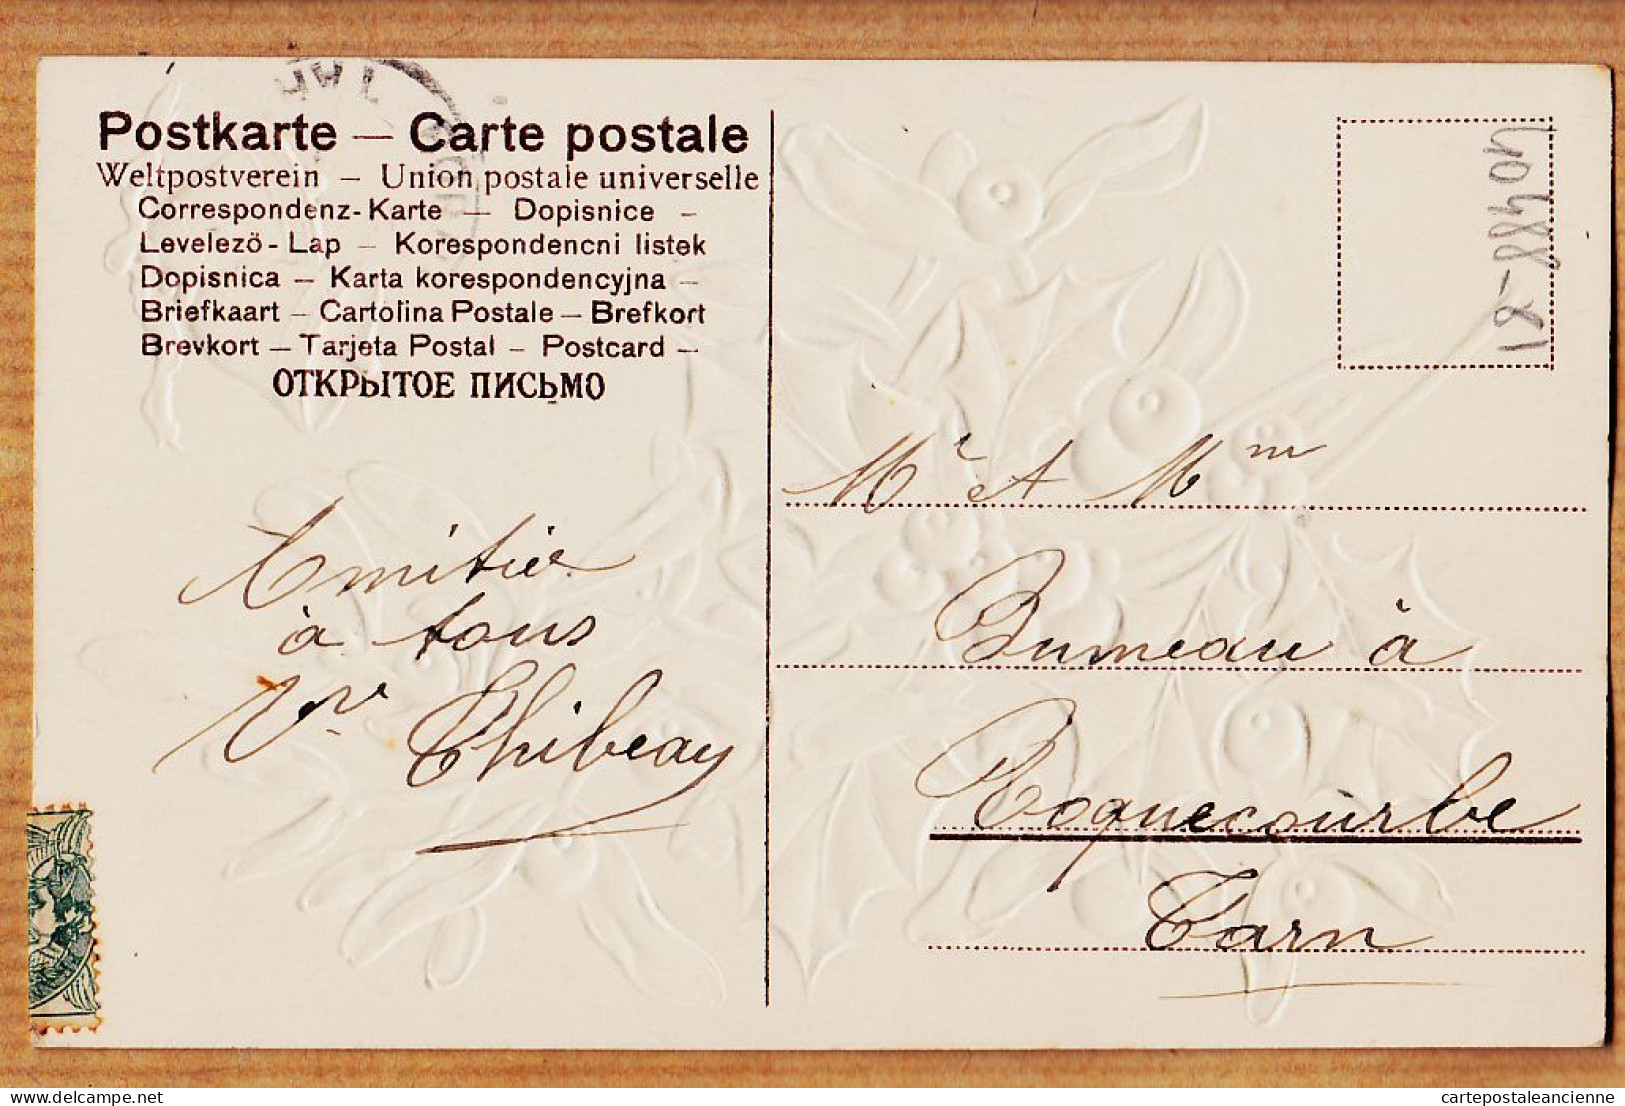 38757  / ⭐ ♥️ Carte Gaufrée Relief BONNE ANNEE 1905s De THIBEAU à RUMEAU Roquecourbe- SER.130 - Nieuwjaar